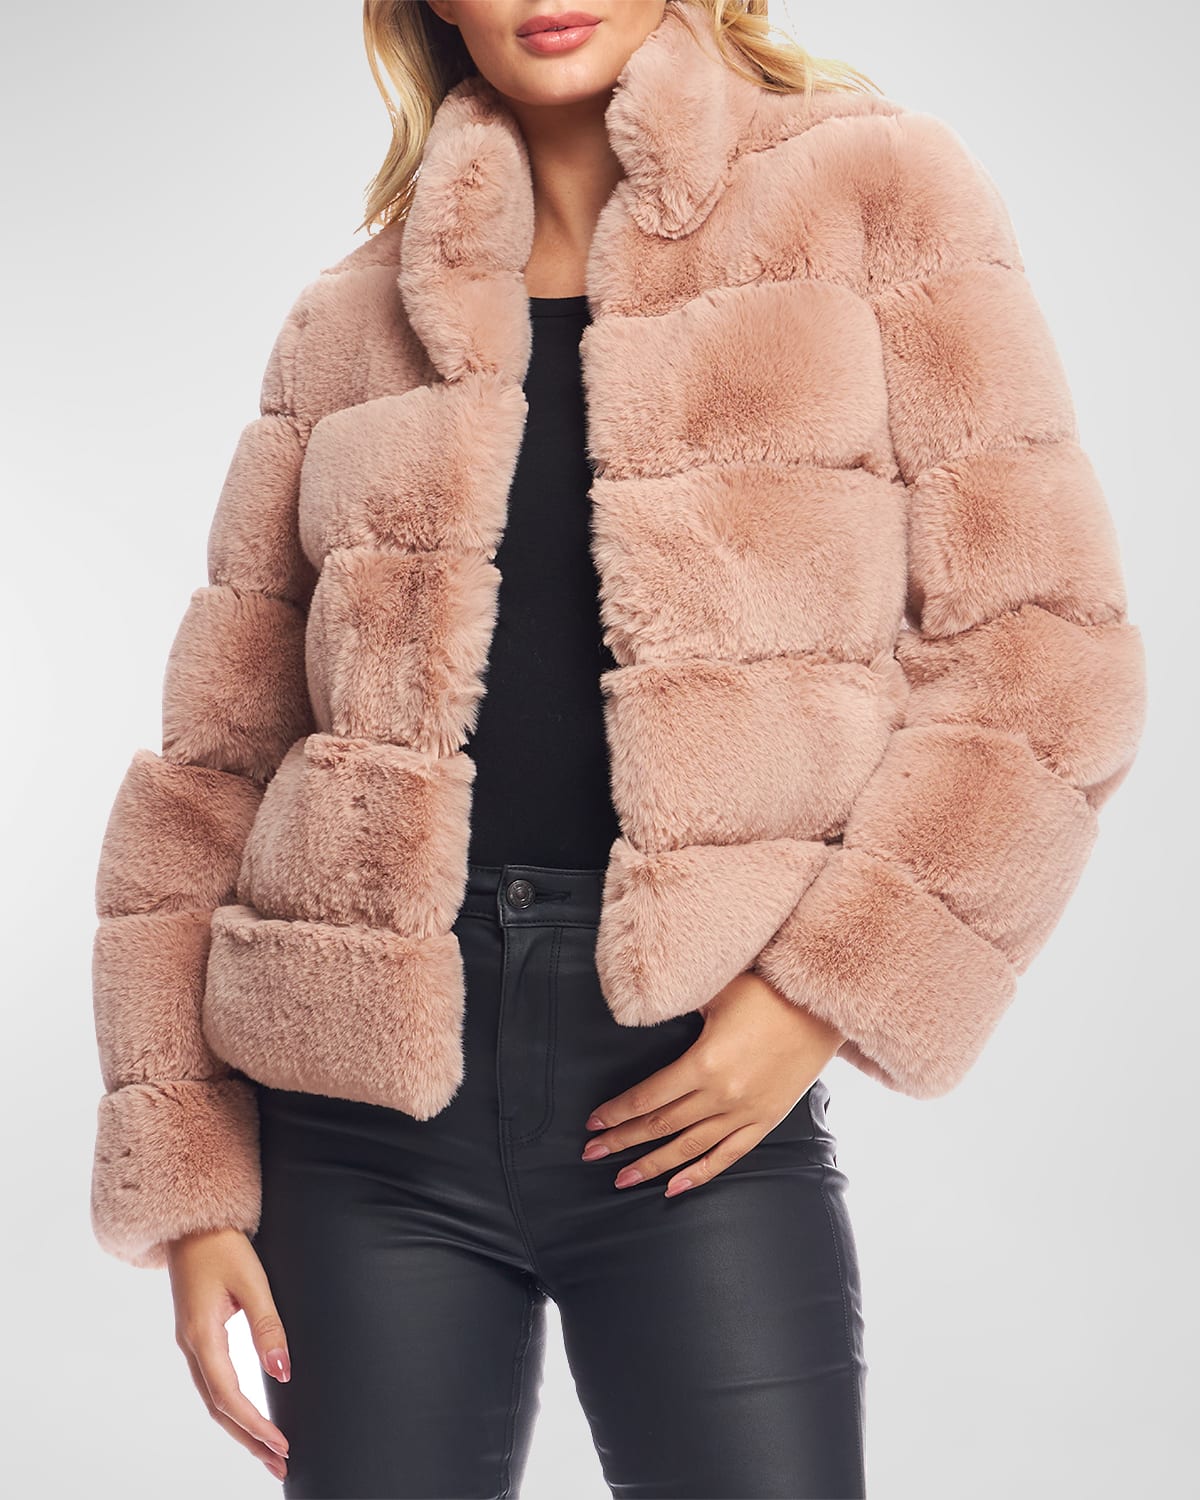 Fabulous Furs The Posh Jacket